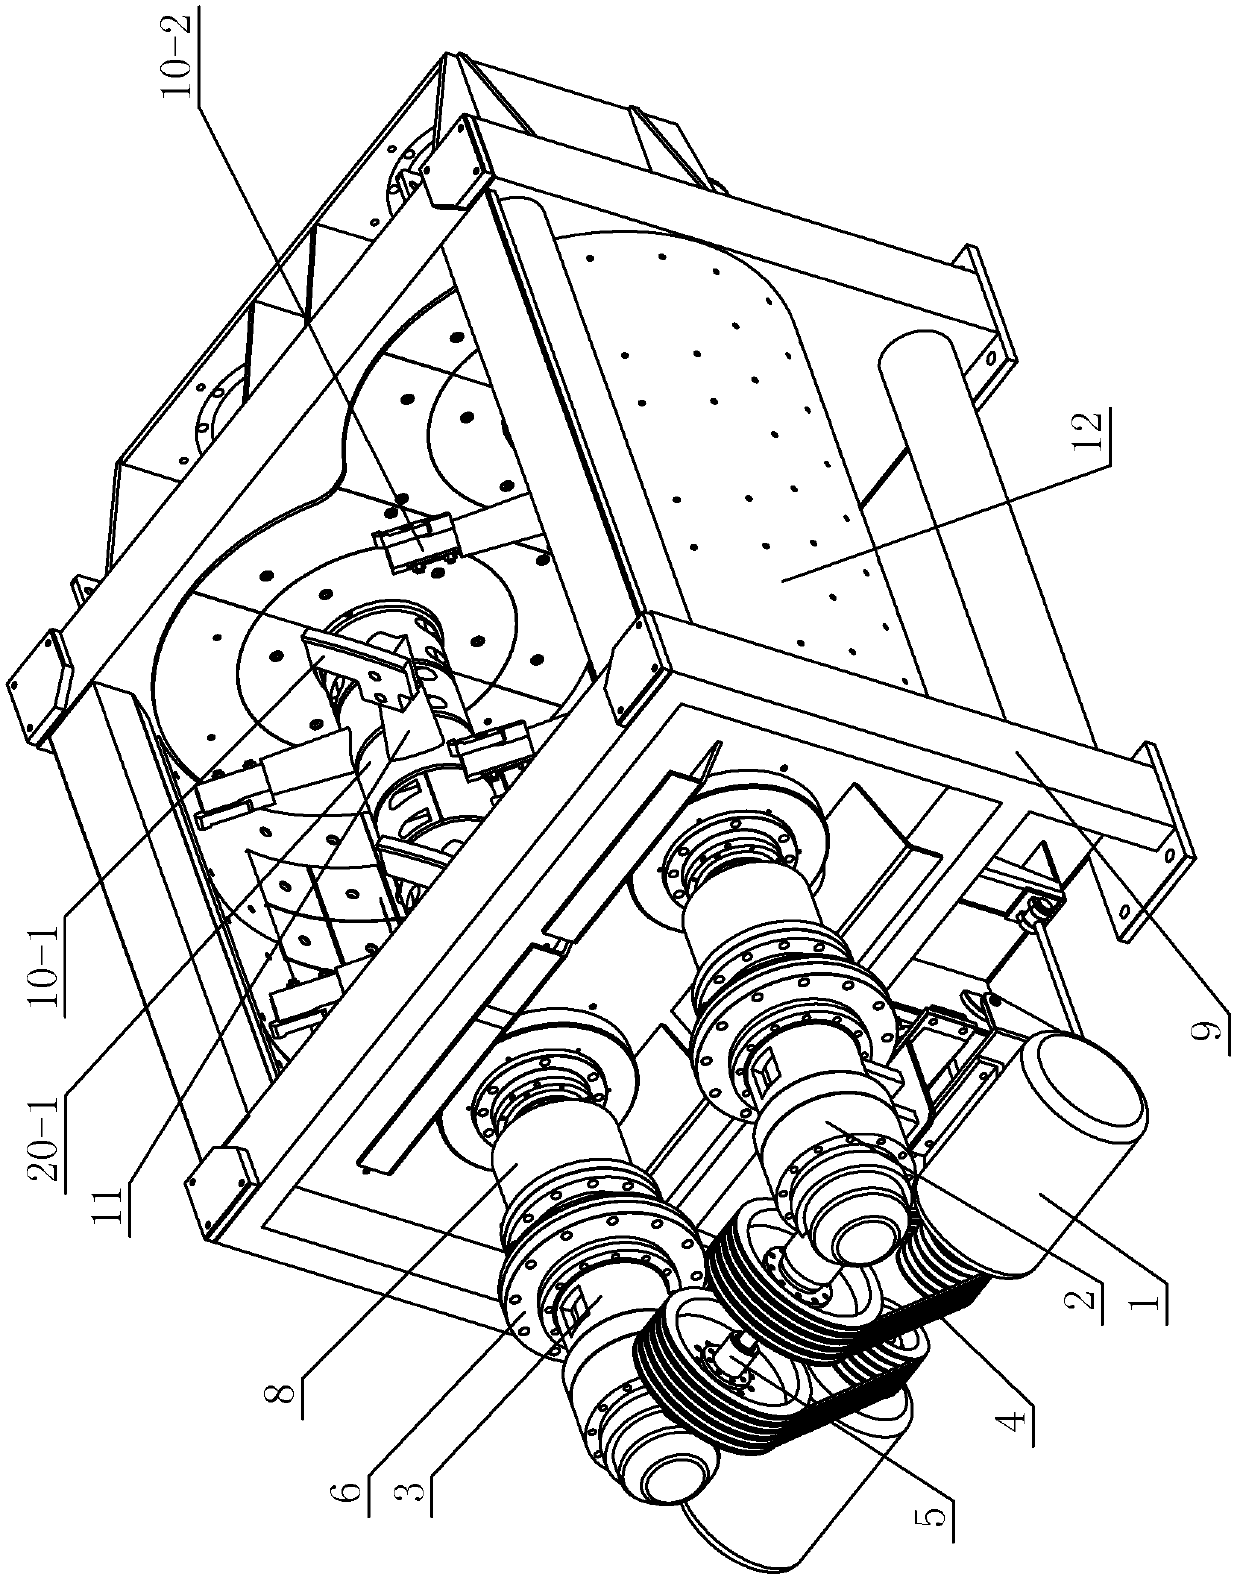 Coupler synchronous type double-horizontal shaft vibration stirring machine